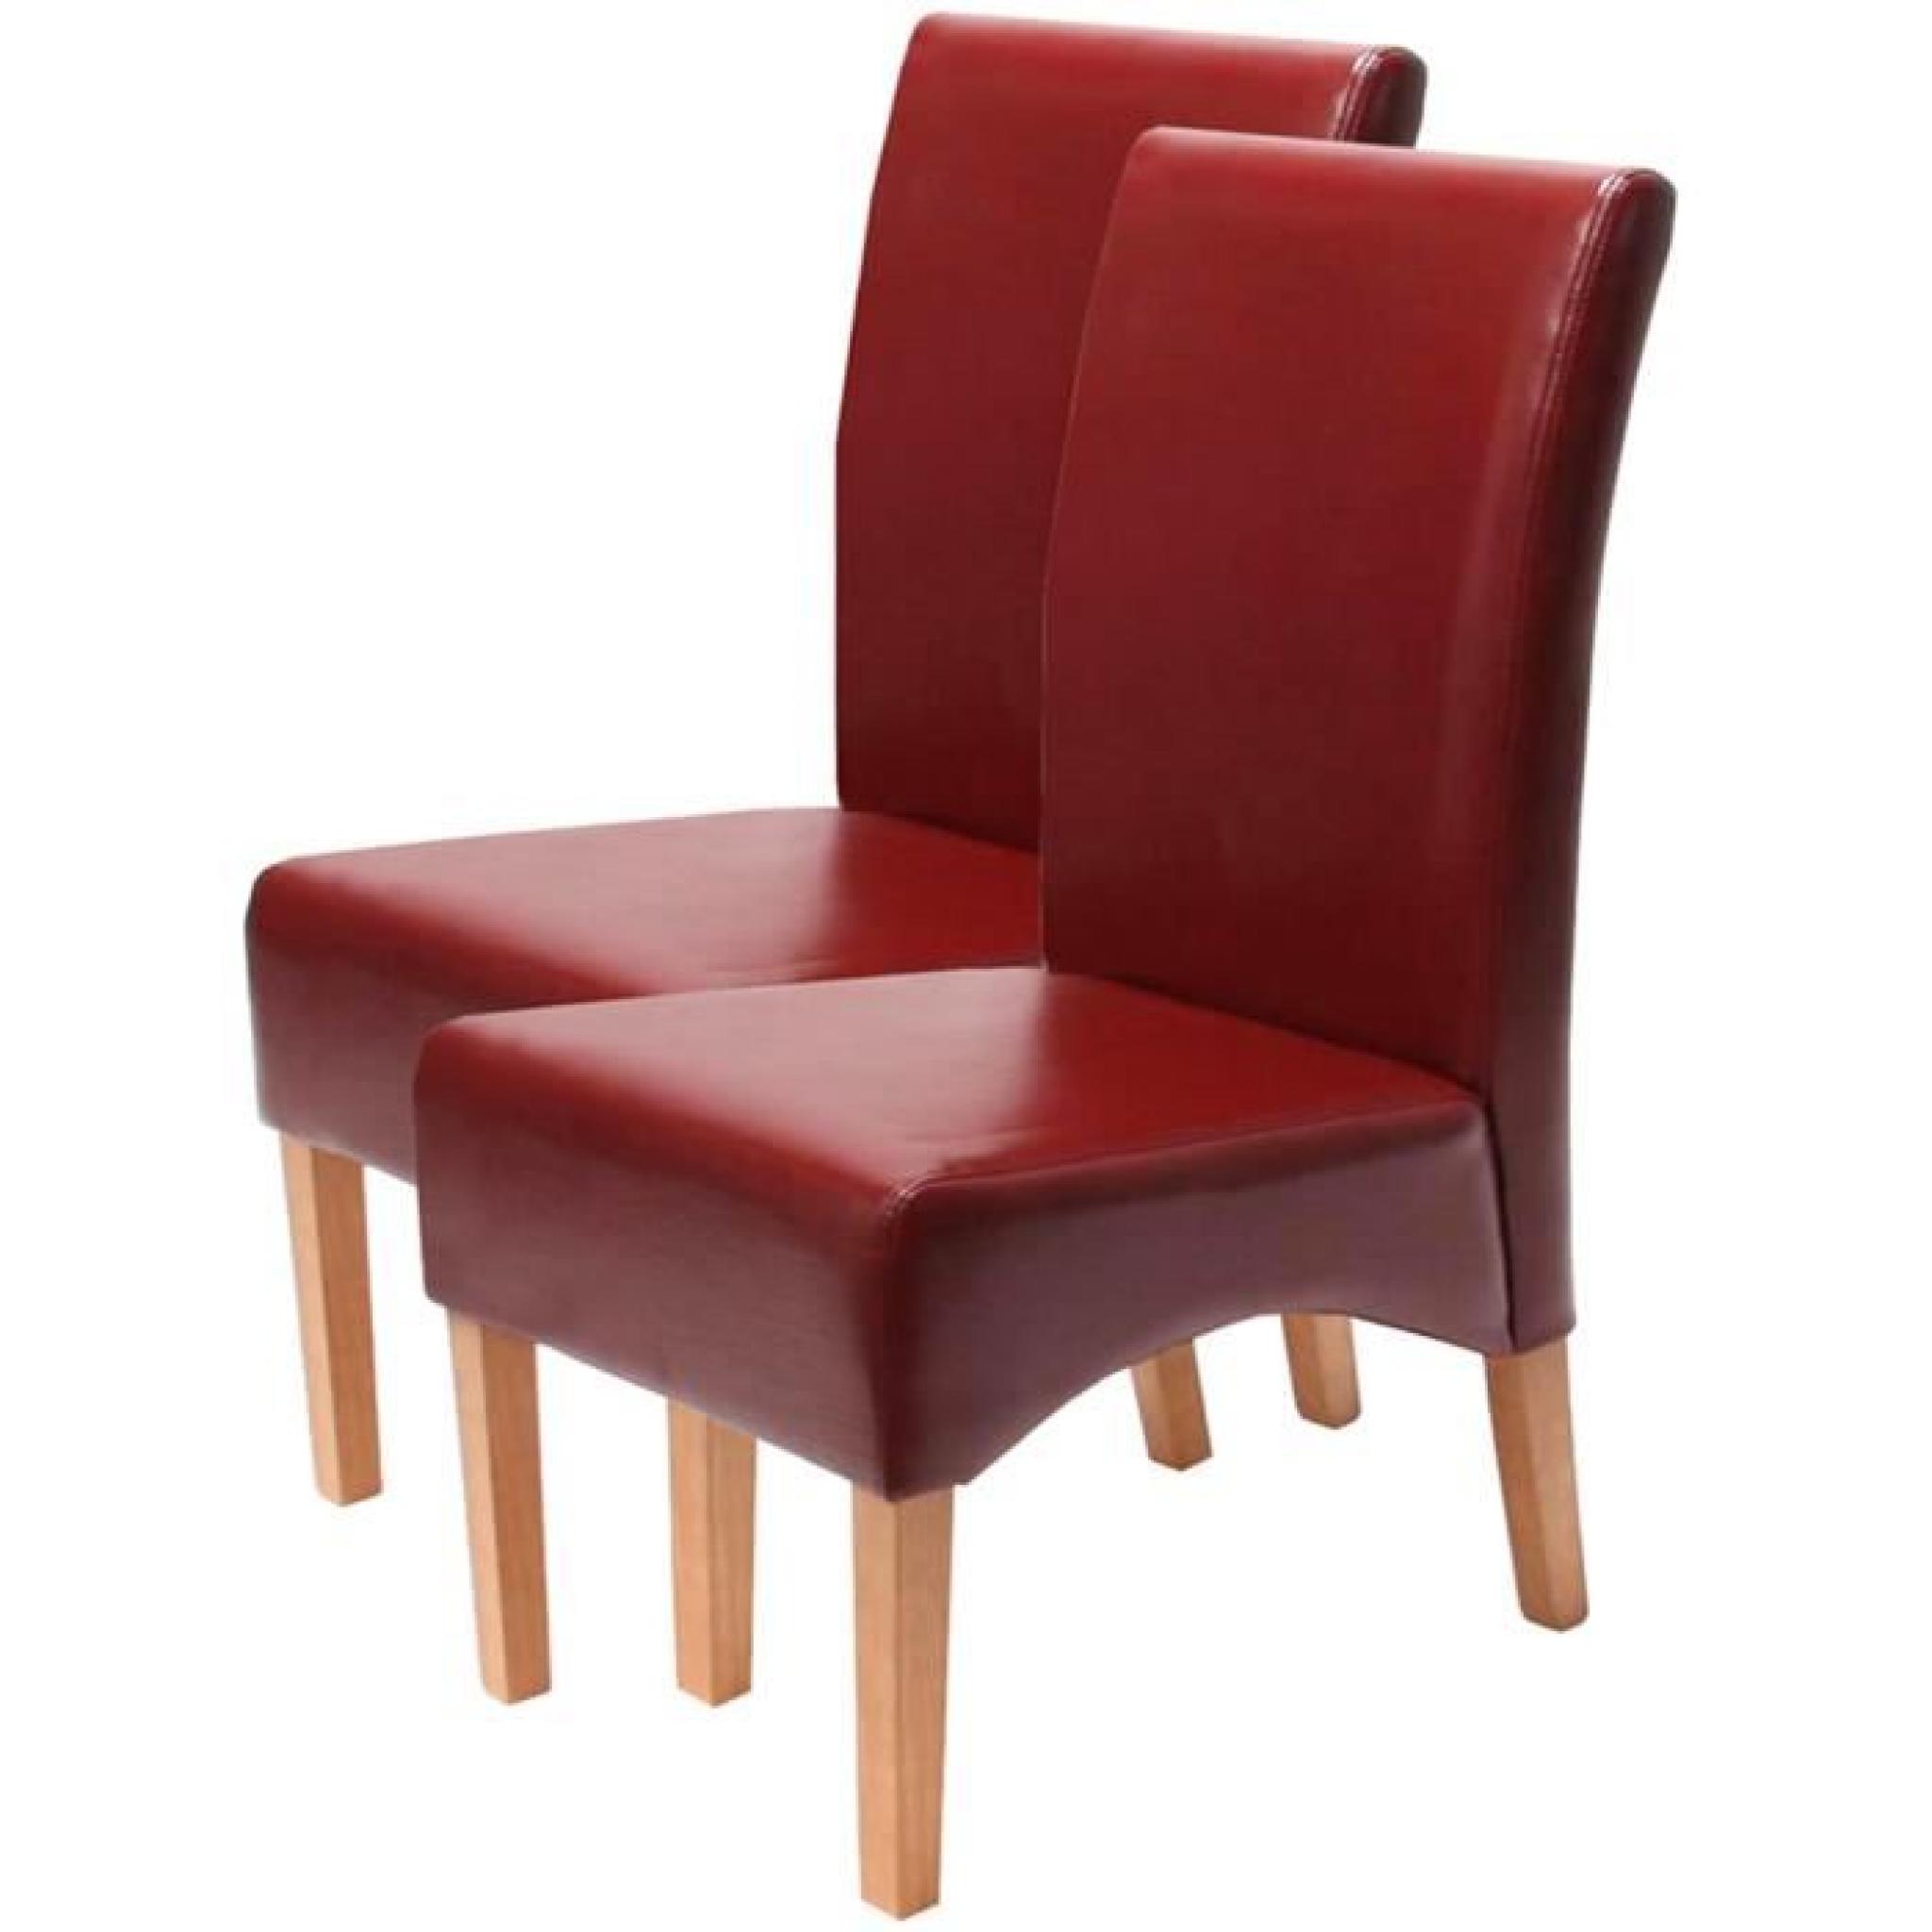 Lot de 2 Chaise Latina en cuir avec pieds brillants, Dim: H 102 x L 44 x P 44 cm, coloris : rouge